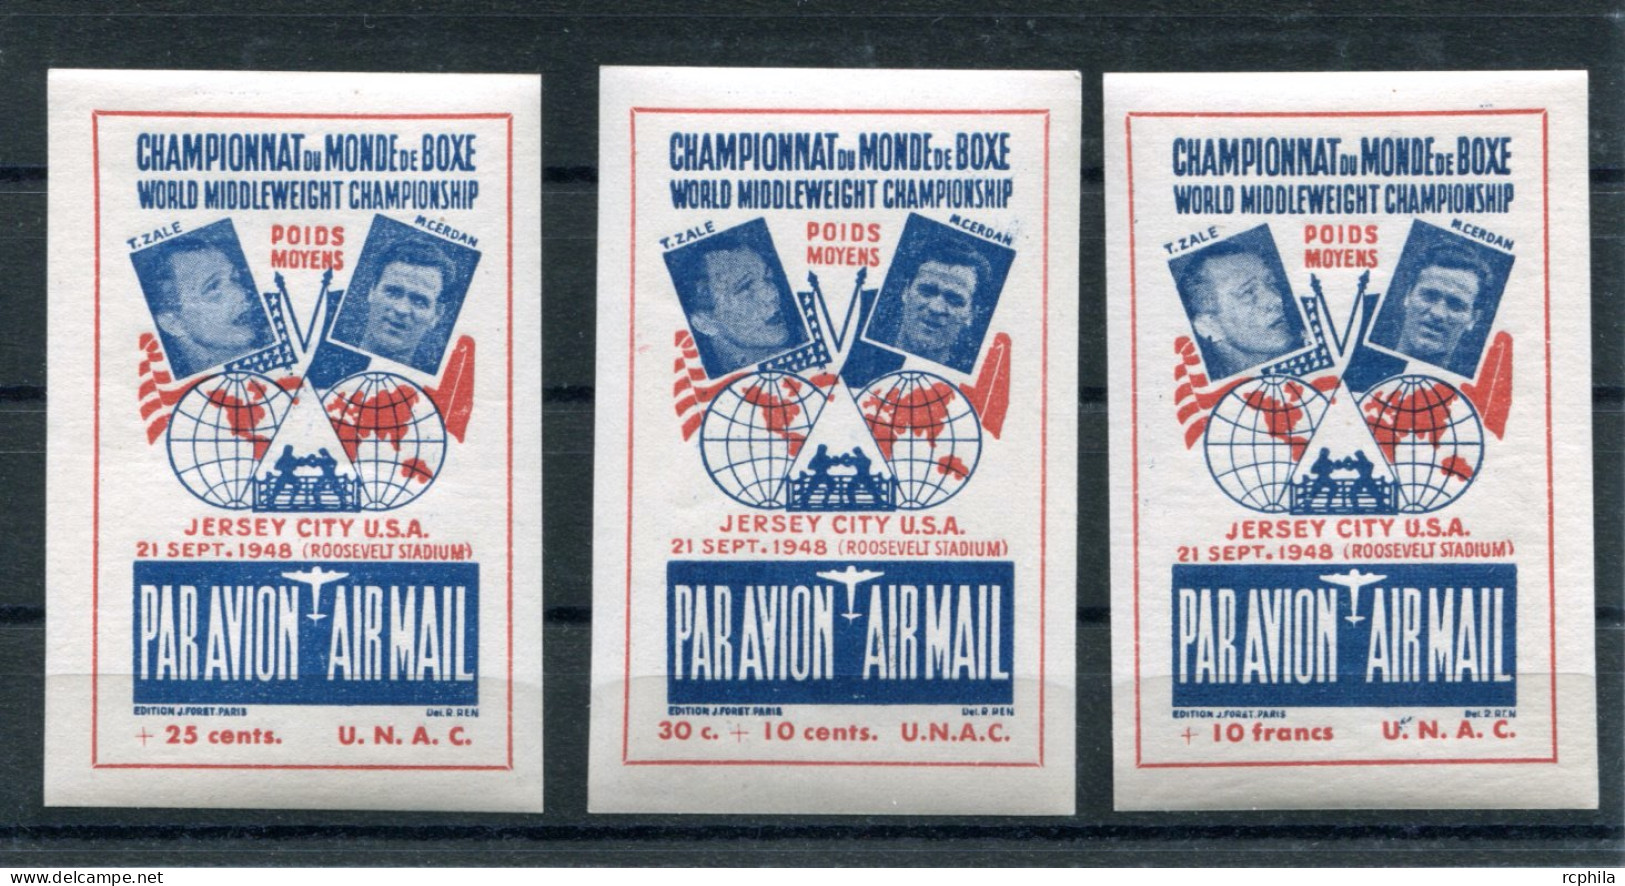 RC 26252 FRANCE 1948 CHAMPIONNAT DU MONDE DE BOXE ZALE - CERDAN 3 VIGNETTES PAR AVION DIFFERENTES NEUF ** - Sports